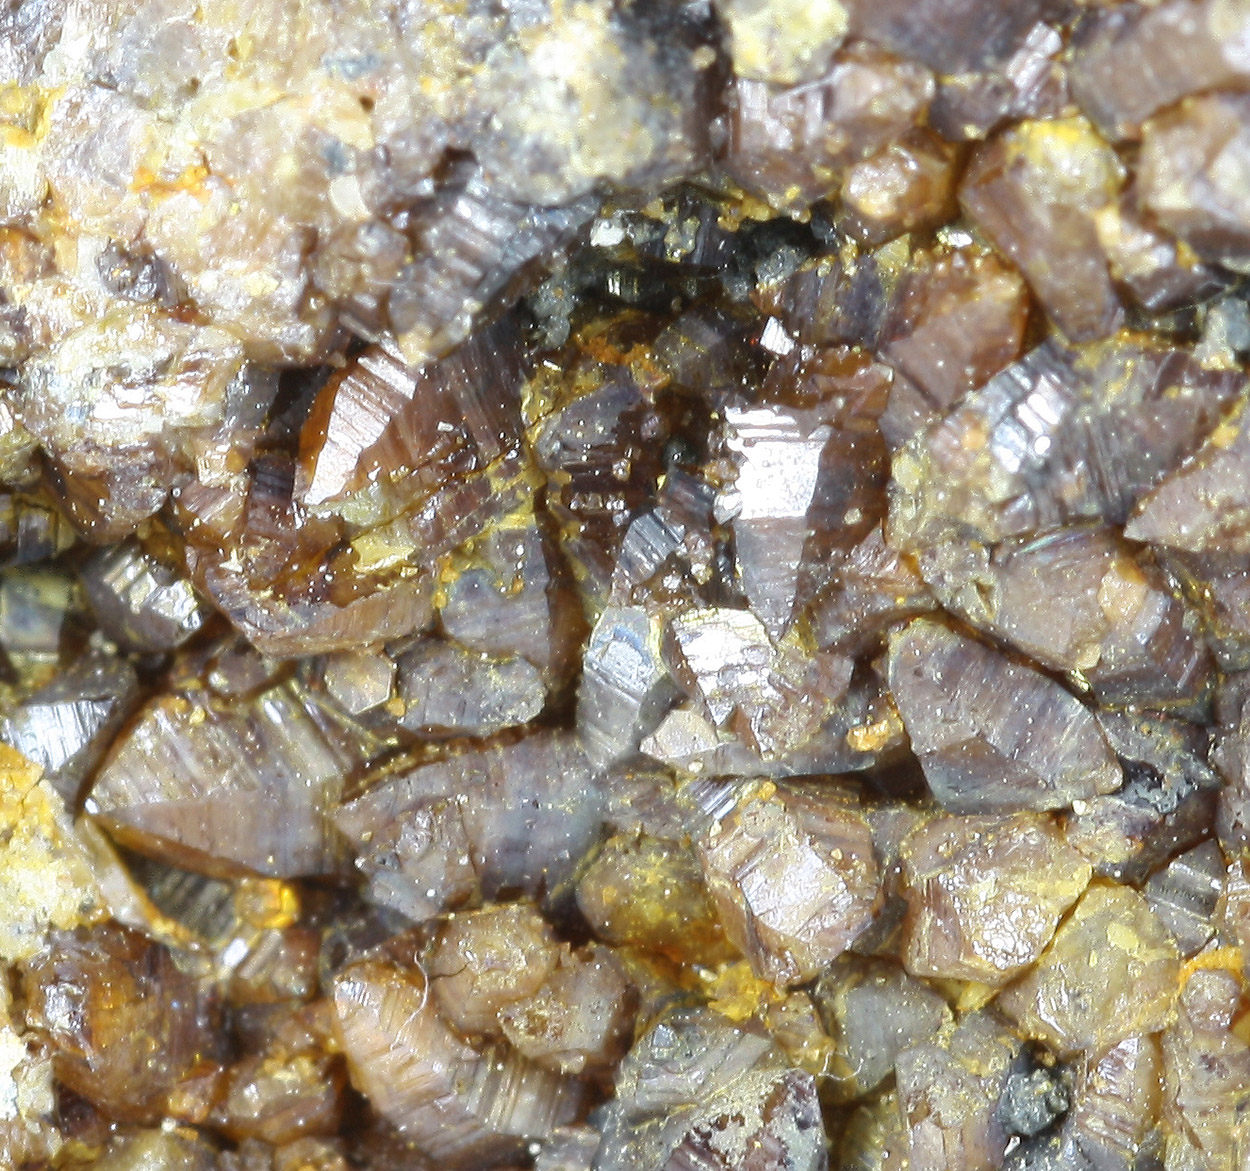 Cadmium Wurtzite